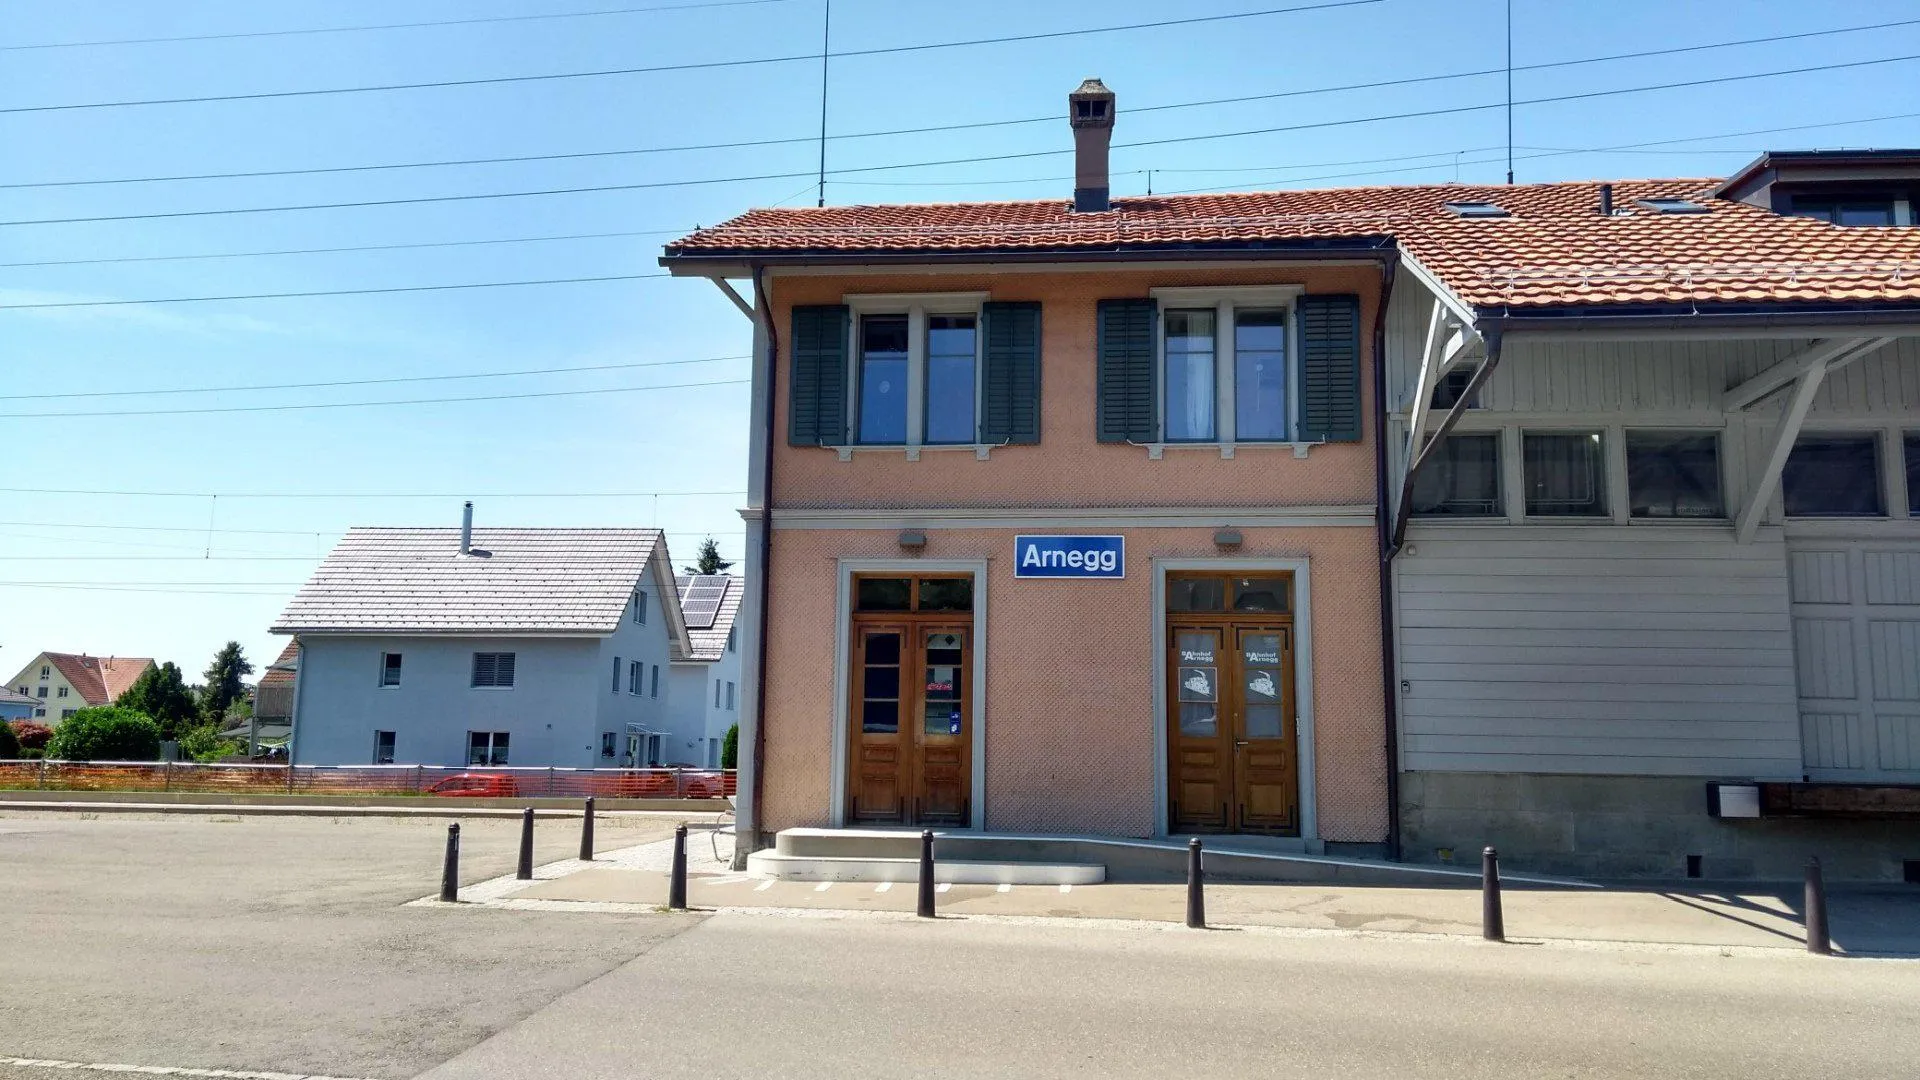 Photo showing: Arnegg railway station in Gossau, St. Gallen, Switzerland.